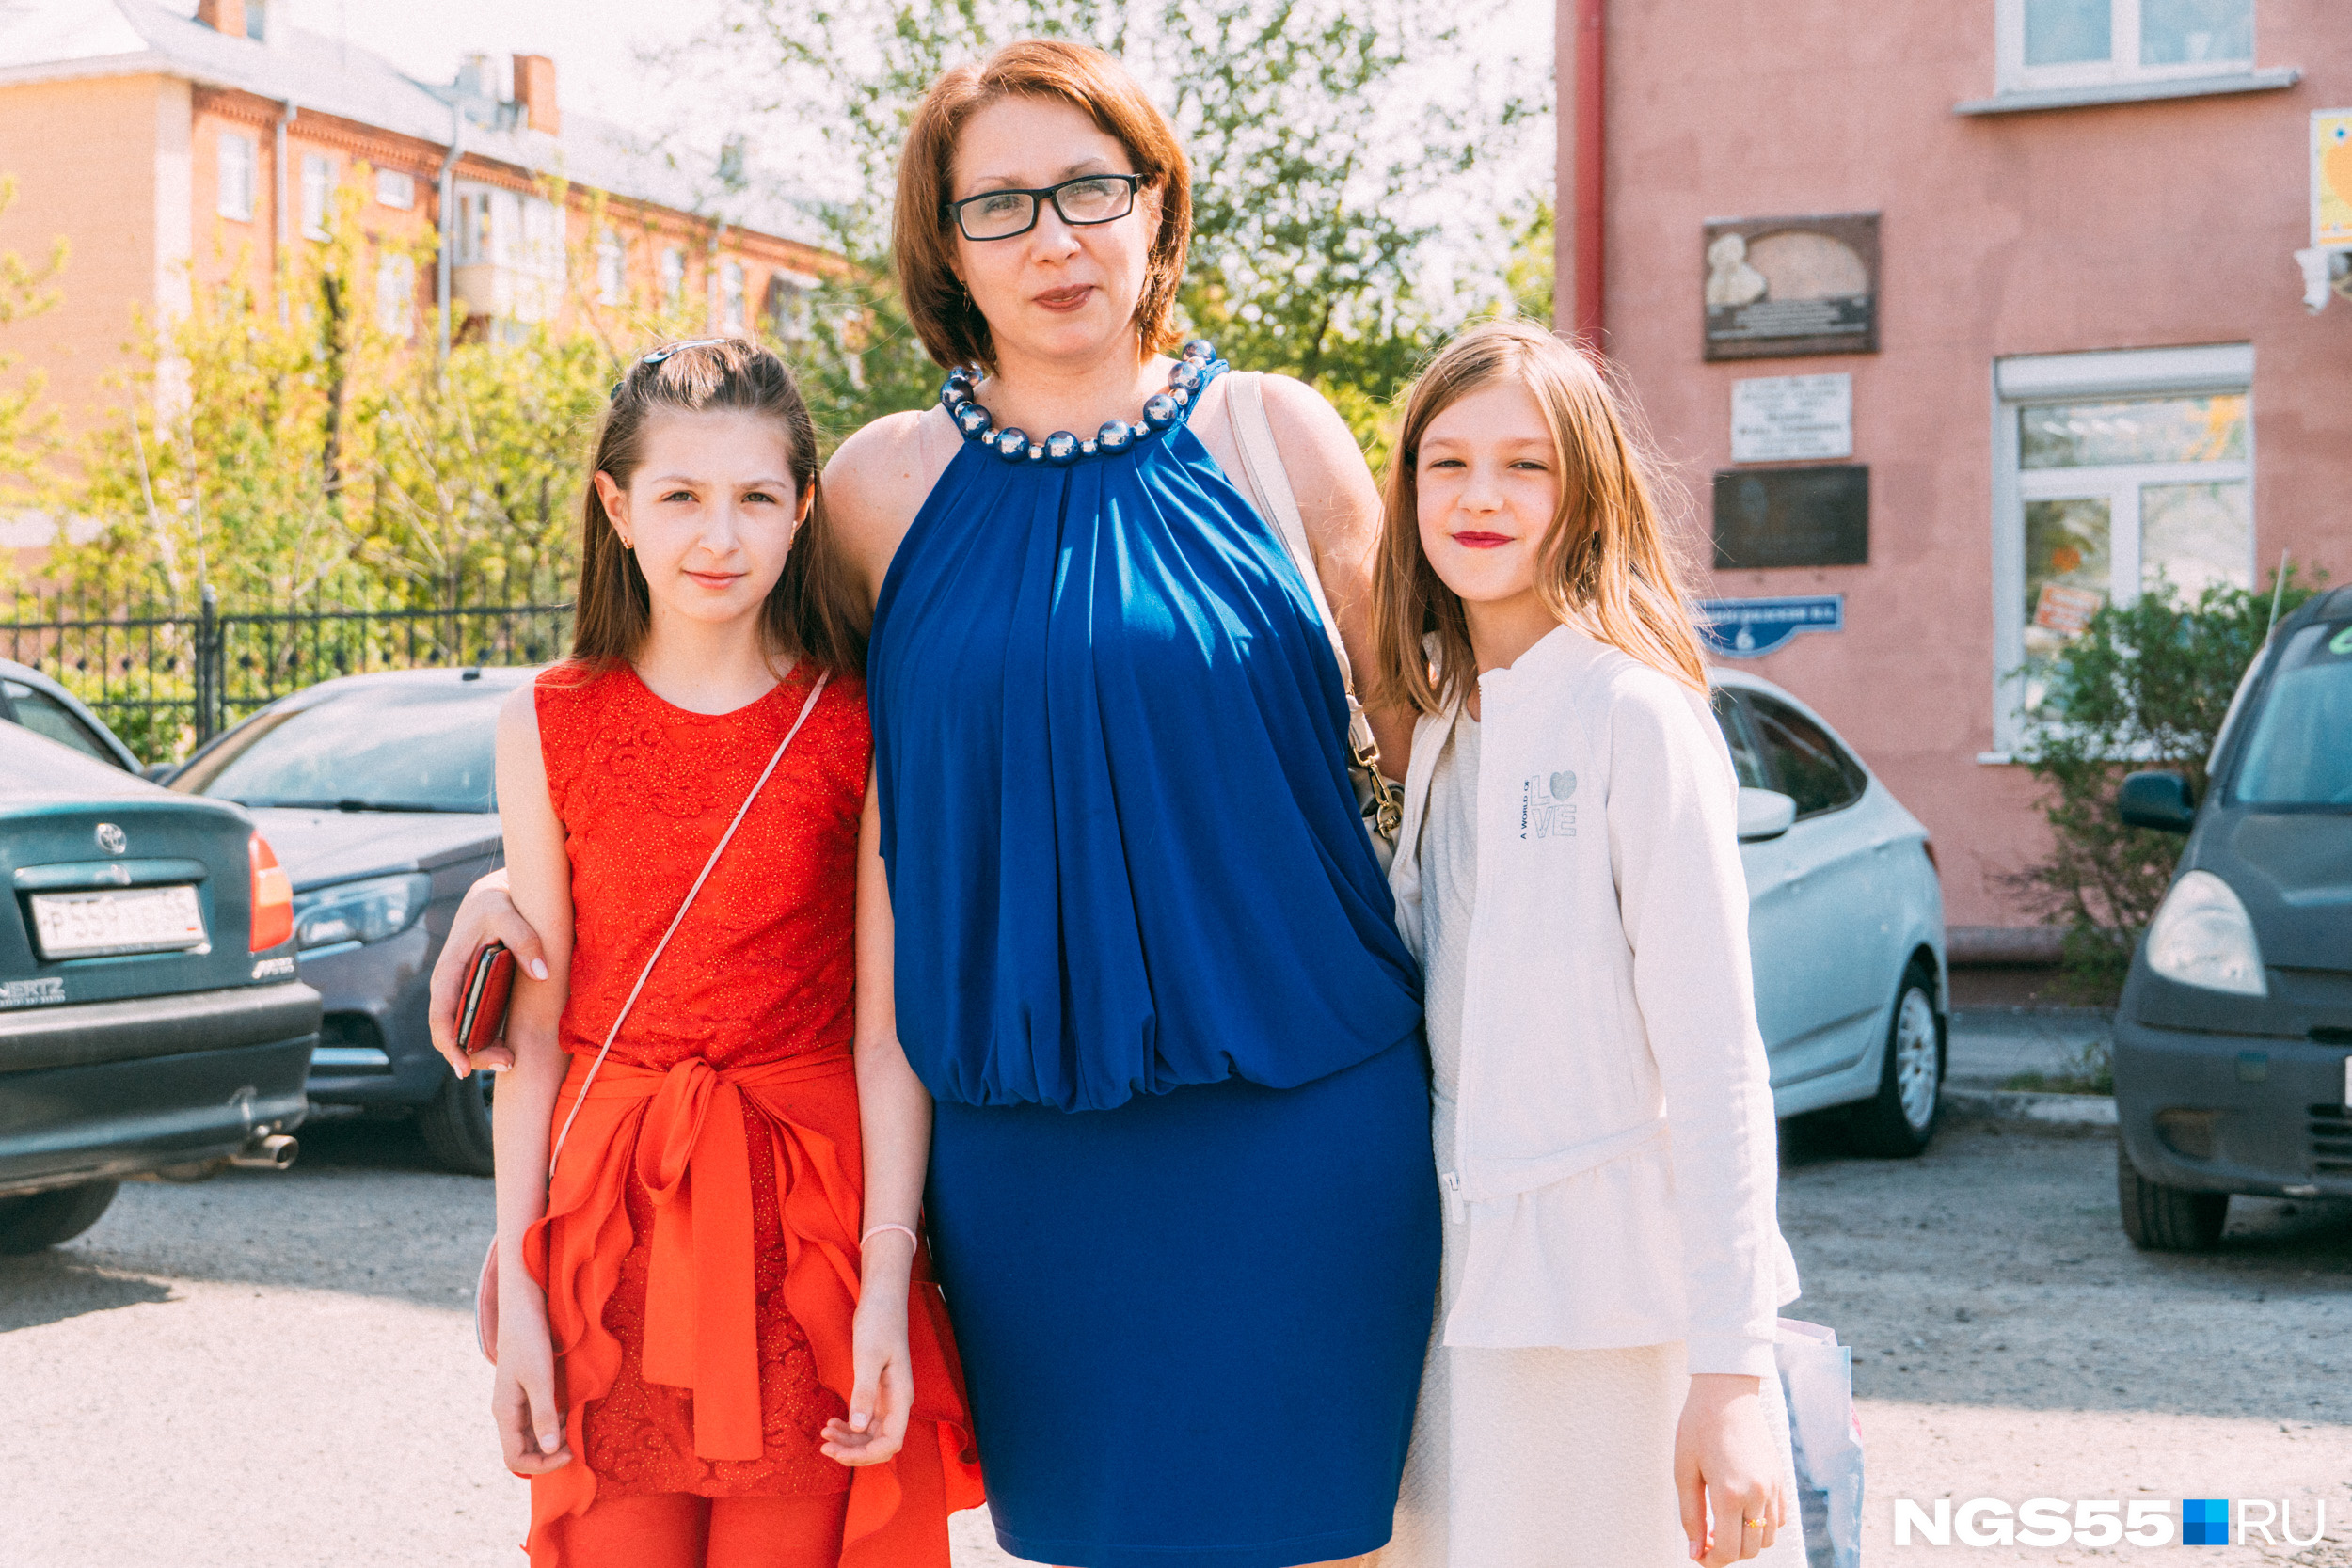 Омичи старались нарядиться по-особенному: эта женщина и две ее дочери подобрали одежду цветов российского флага